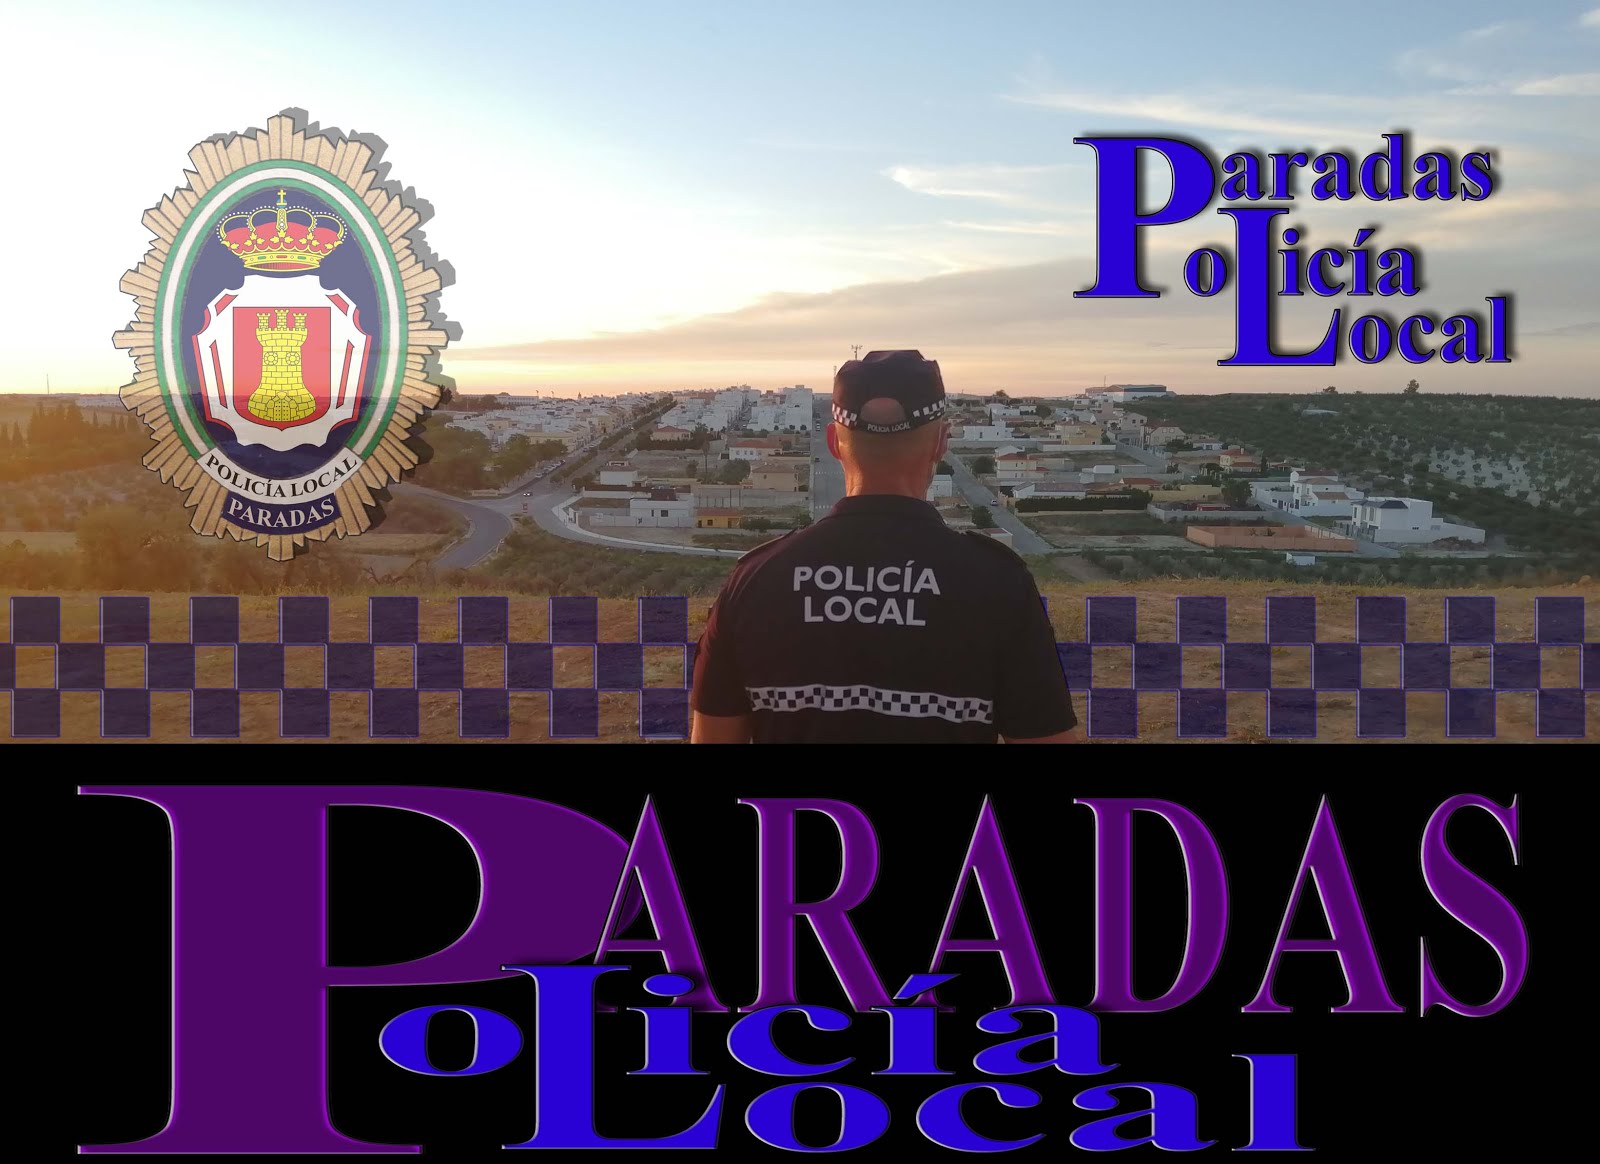 JEFATURA DE POLICIA LOCAL PARADAS